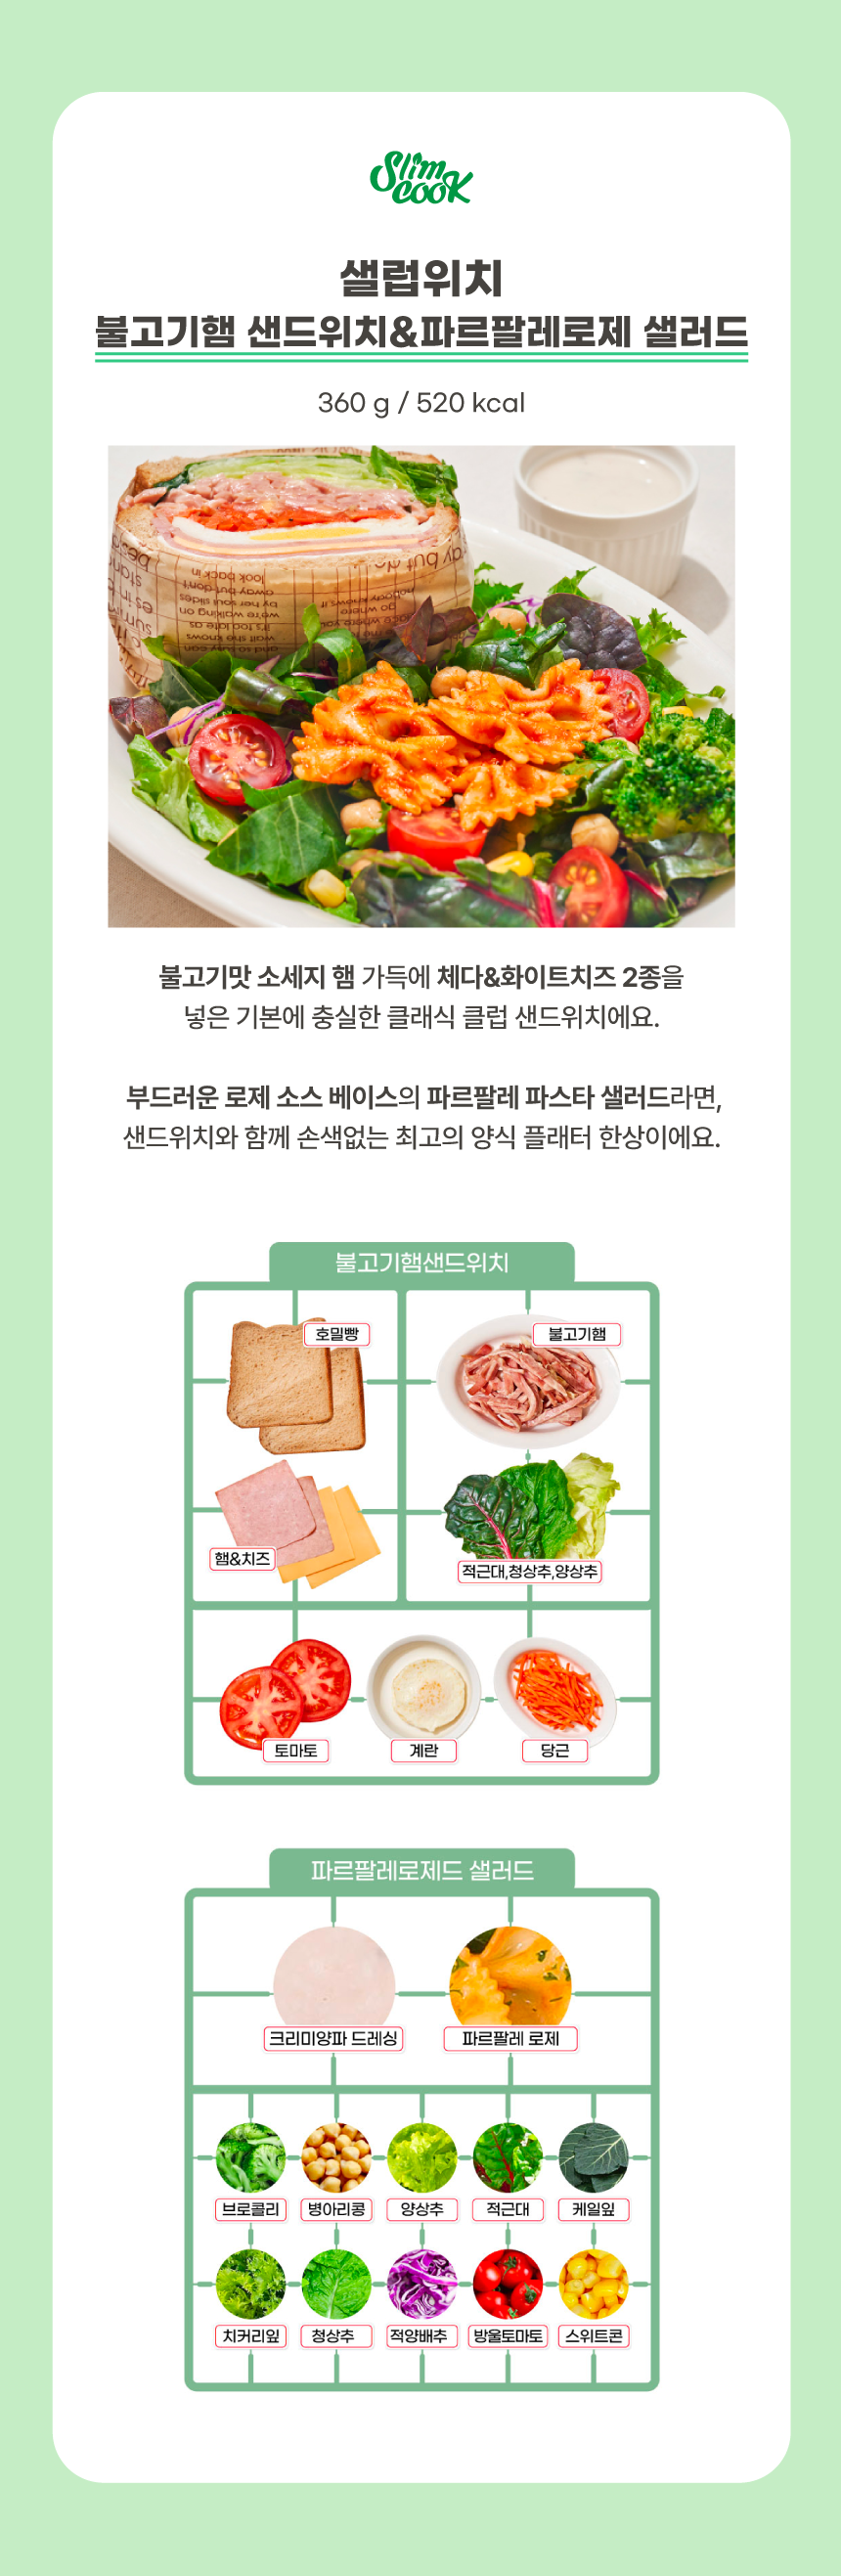 불고기햄 샌드위치 + 파르팔레 로제 샐러드 상세정보